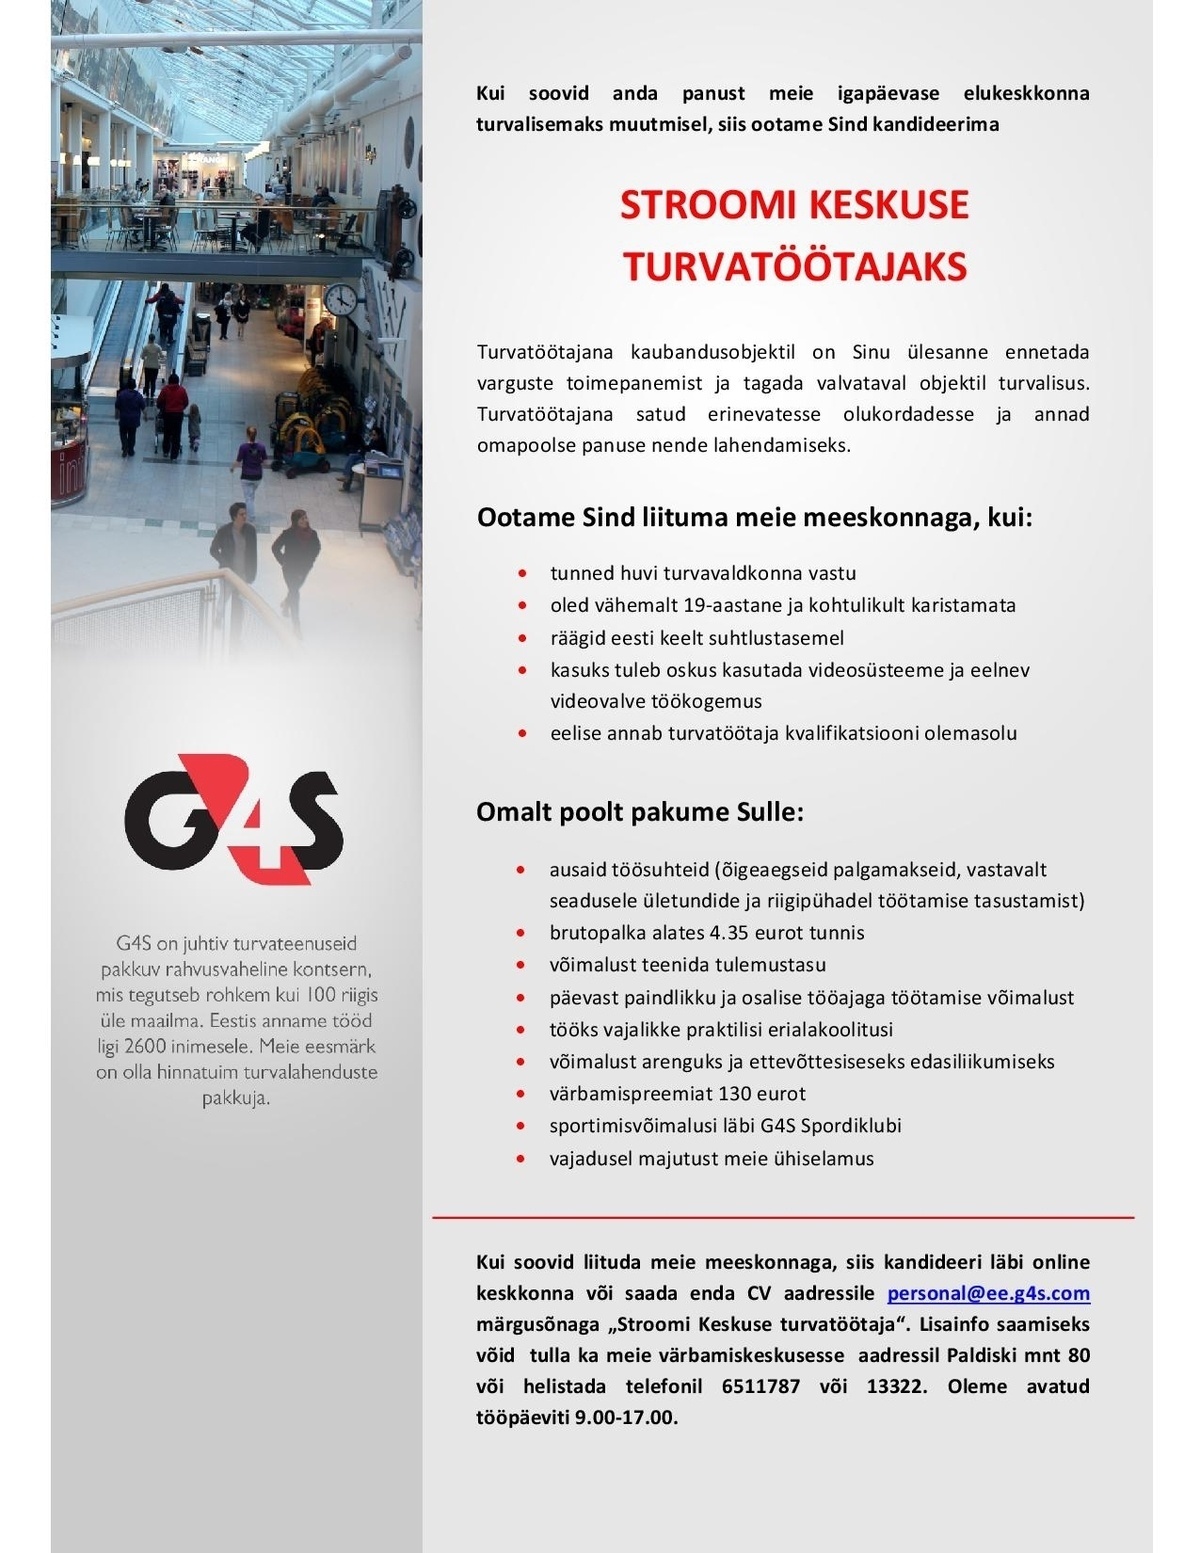 AS G4S Eesti Stroomi Keskuse turvatöötaja